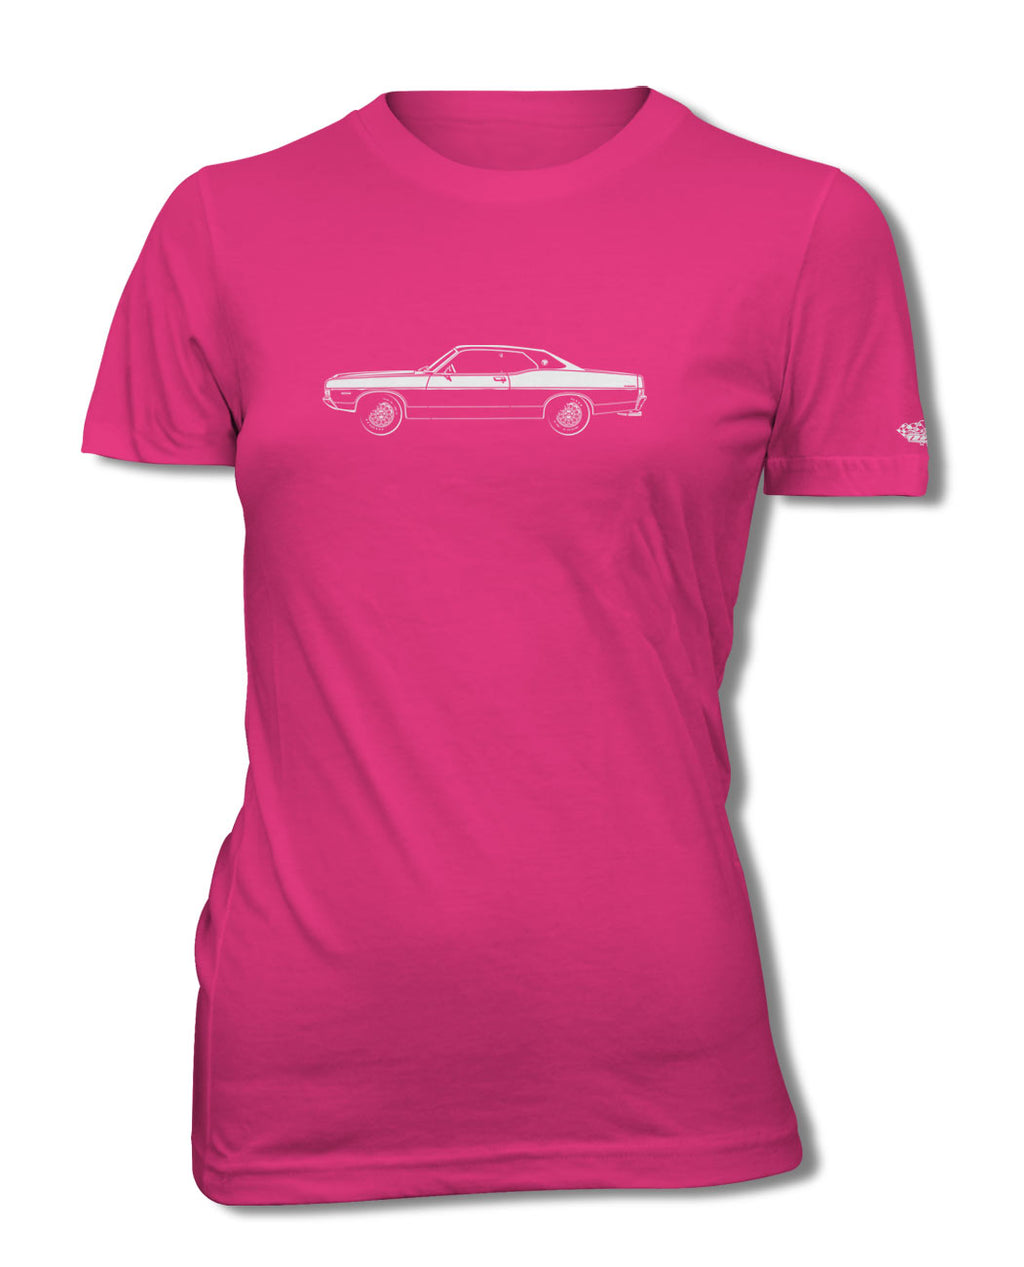 1968 Ford Torino GT Hardtop T-Shirt - Women - Side View